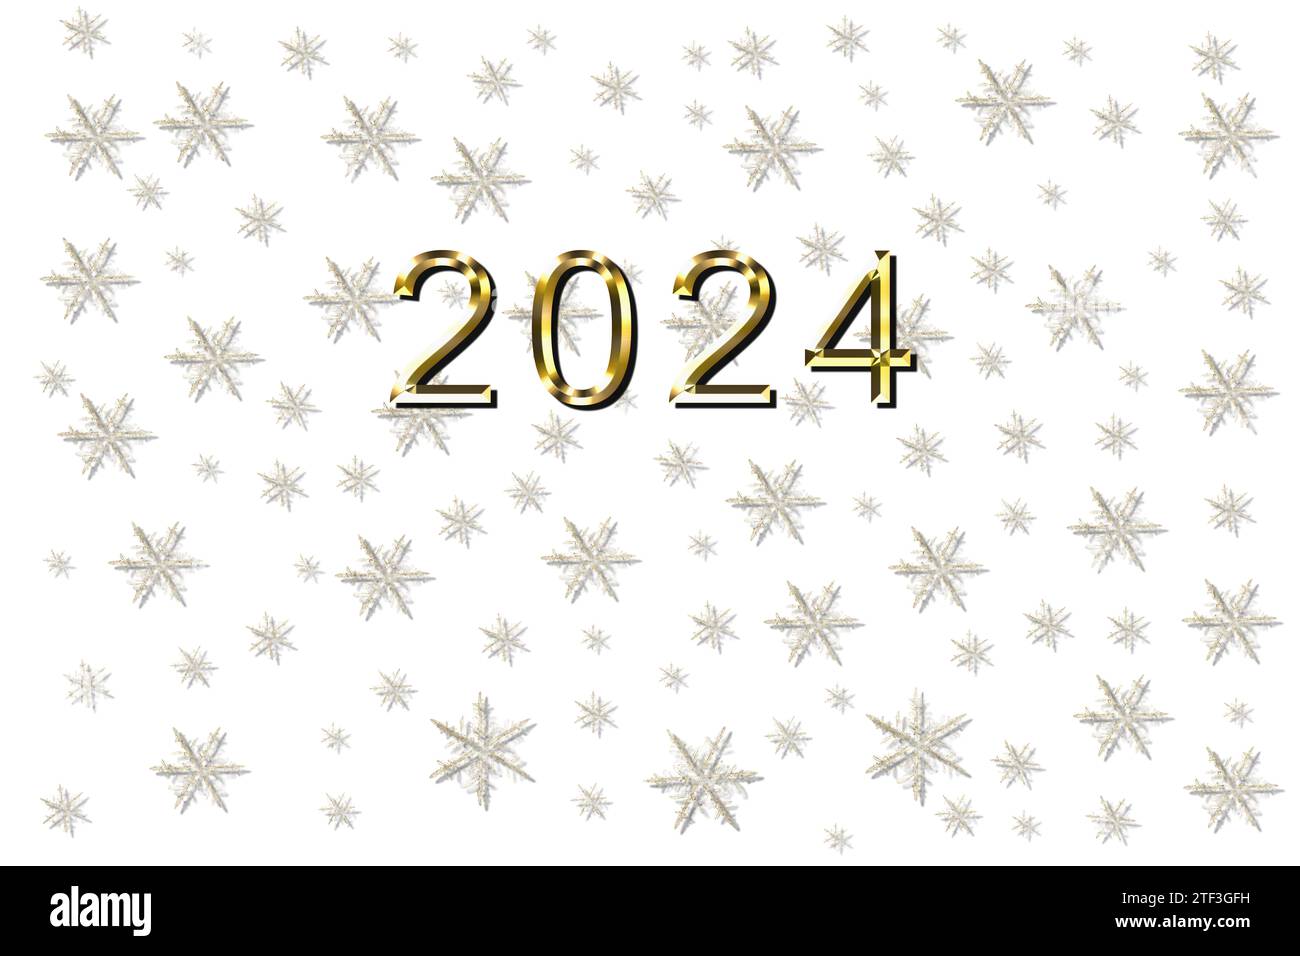 Jahr 2024 goldenes Neujahr, Schneeflocken mit brillanten Aussichten mit goldener Inschrift, eine elektrisierende Illustration von 2024 Stockfoto